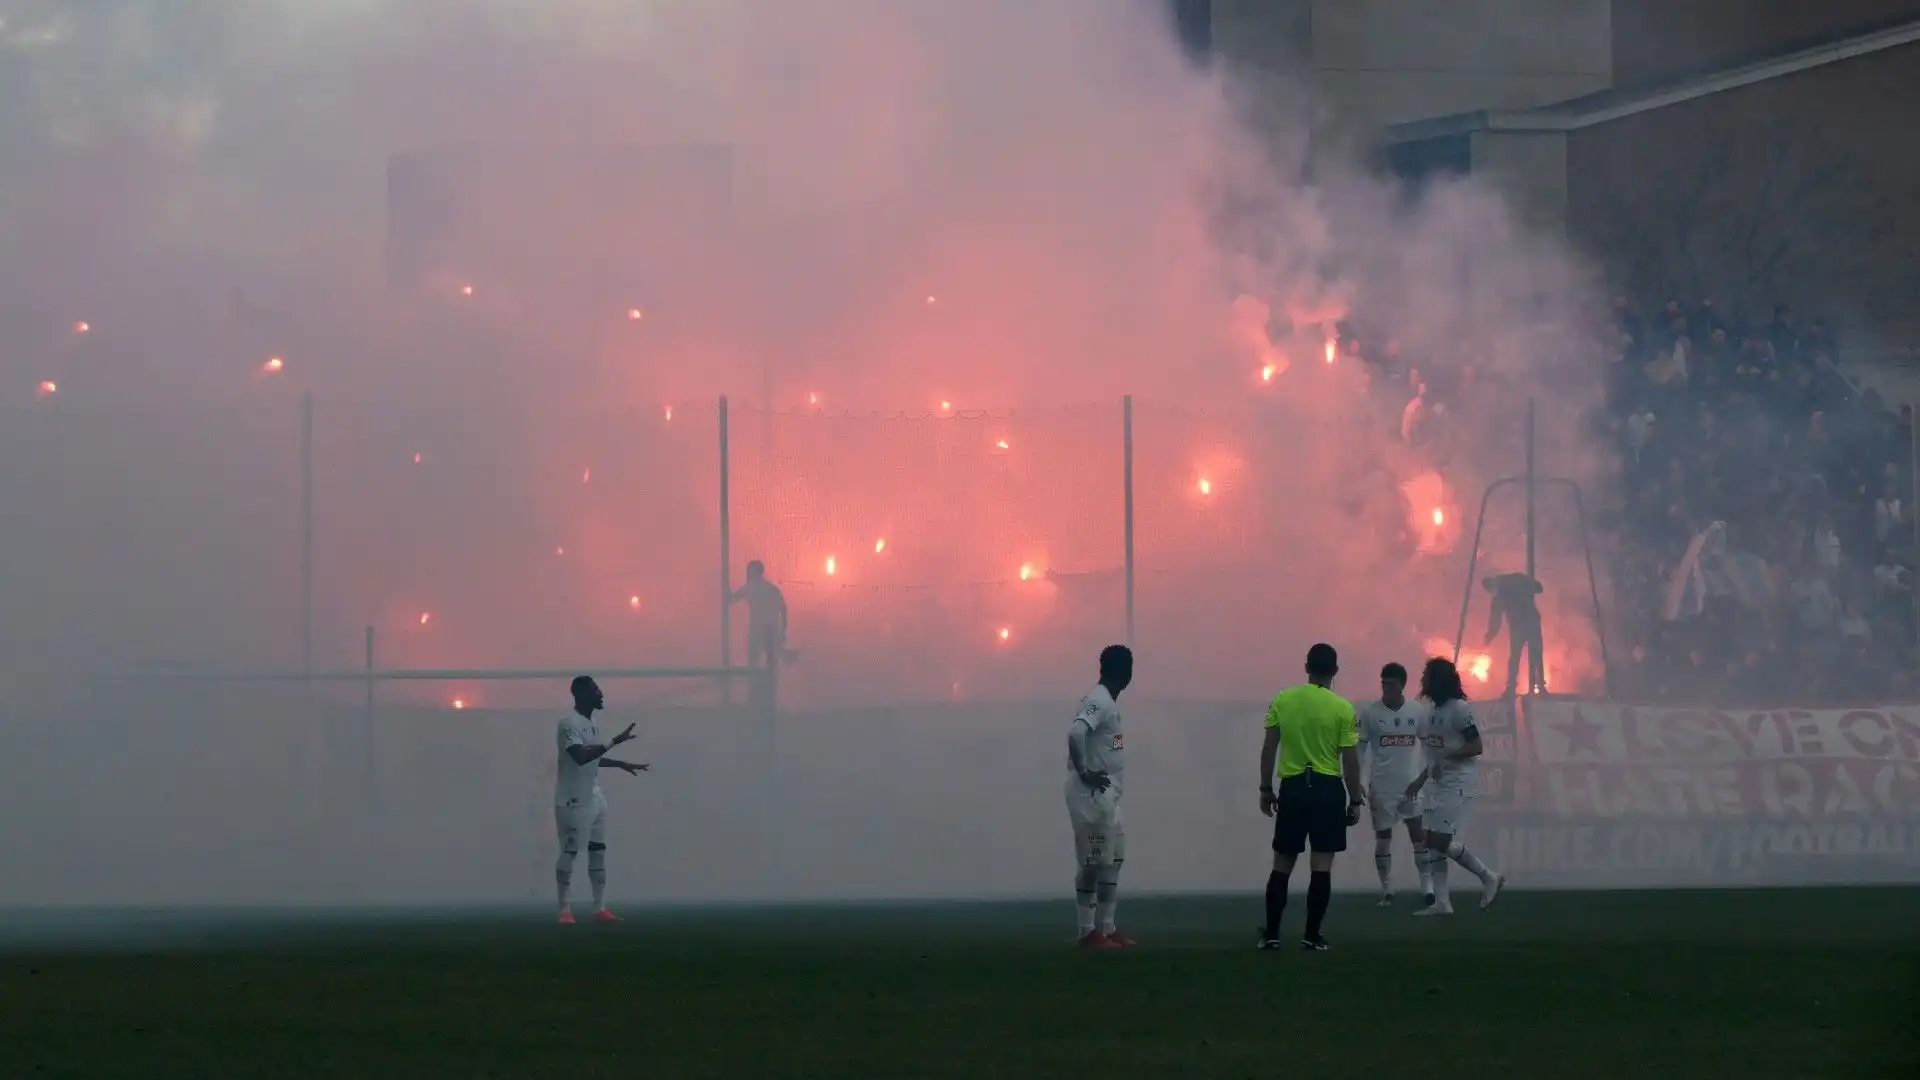 L'episodio è accaduto durante la partita tra Olympique Marsiglia e Hyères